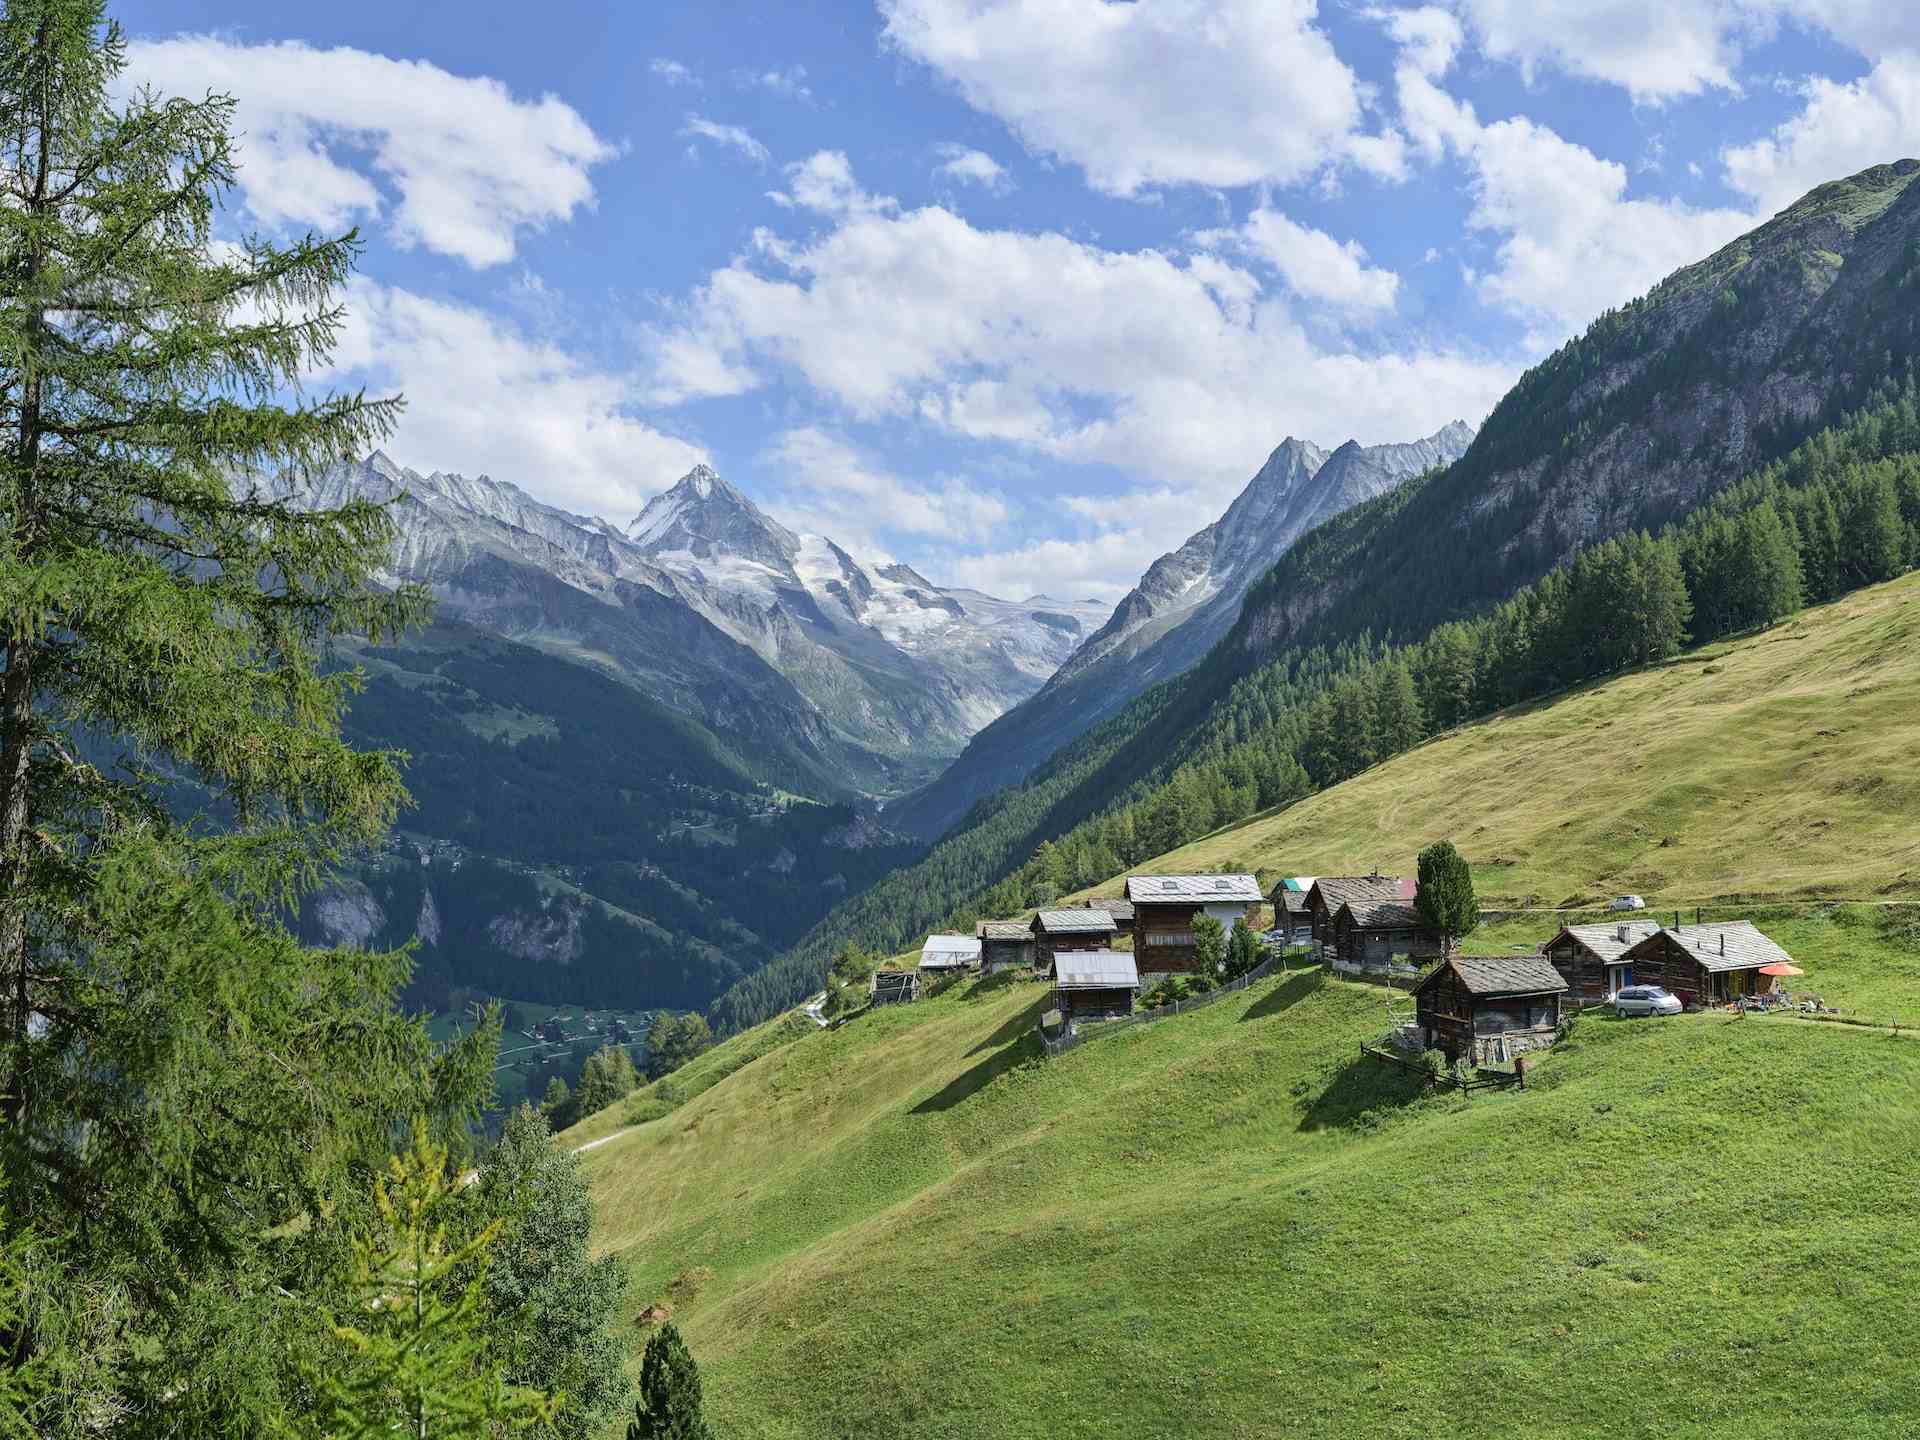 Ferme de Beauchegneau, producer in La Forclaz canton of Valais in Switzerland, | Mimelis